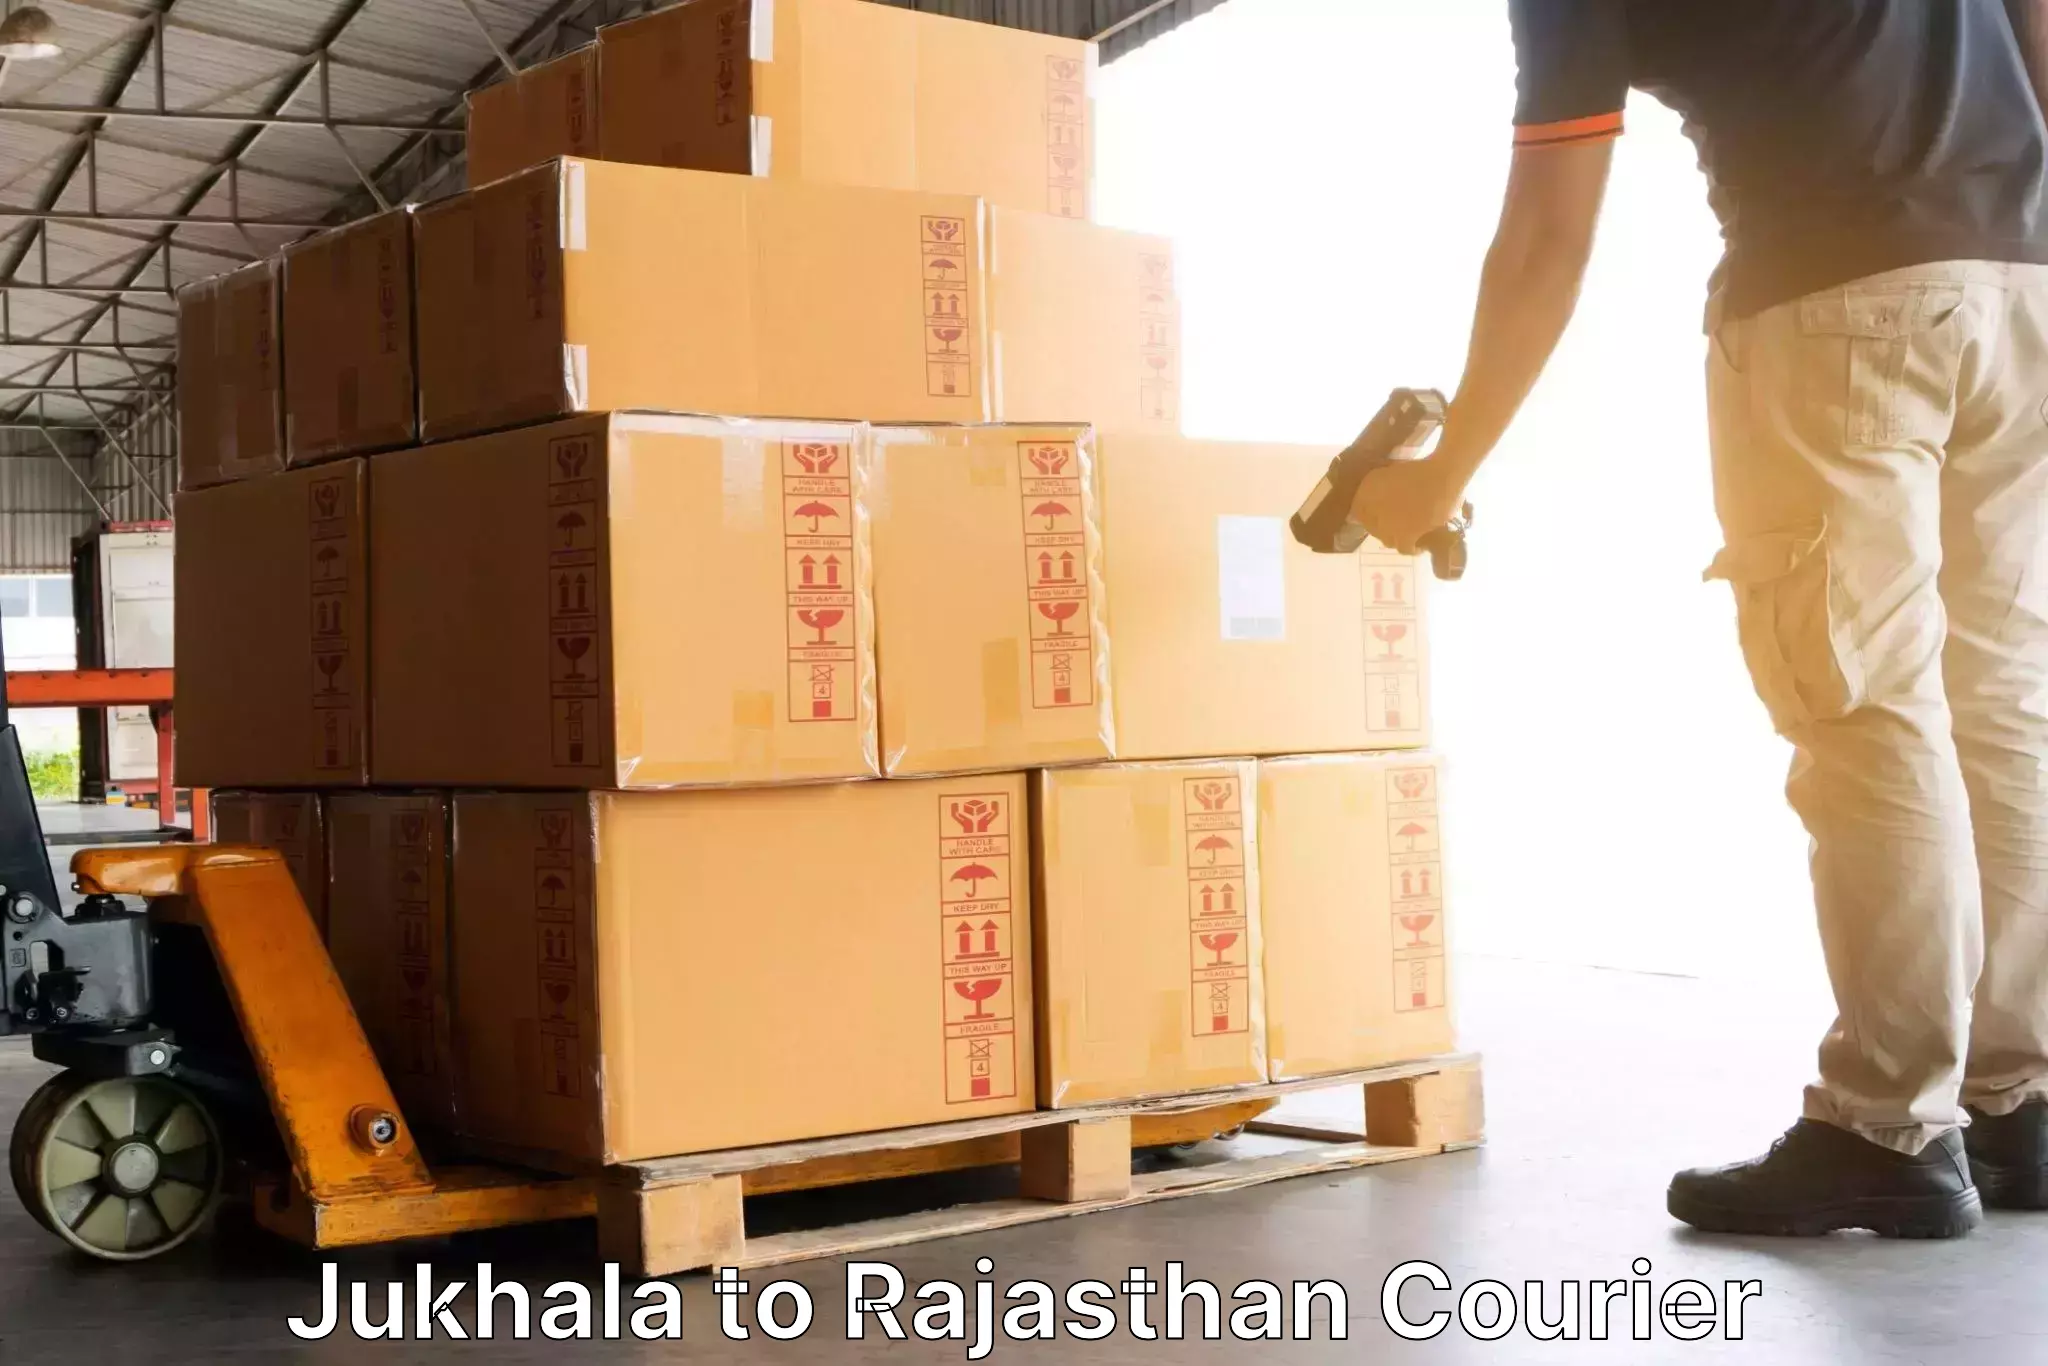 Online shipping calculator Jukhala to Jayal